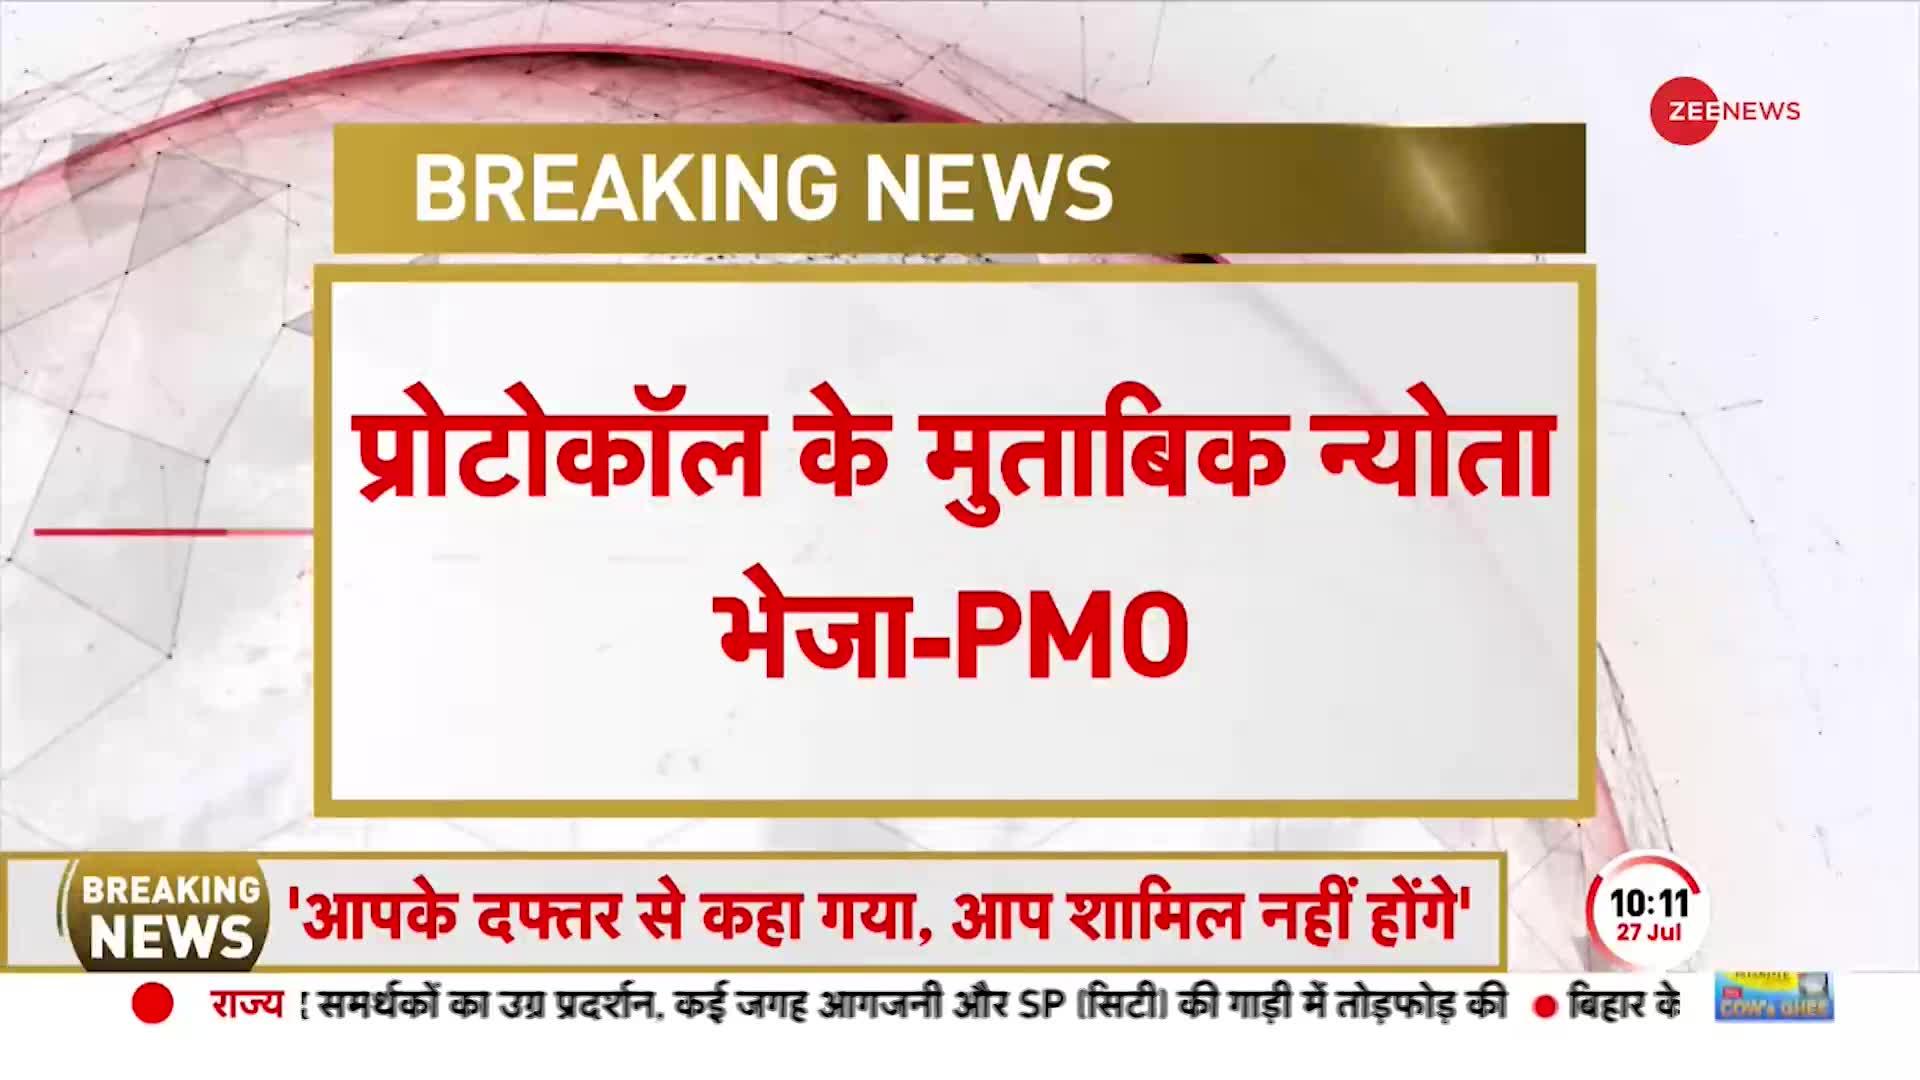 Rajasthan News: गहलोत के आरोप पर PMO का जवाब- 'आपके दफ्तर से कहा गया नहीं आ पाएंगे'